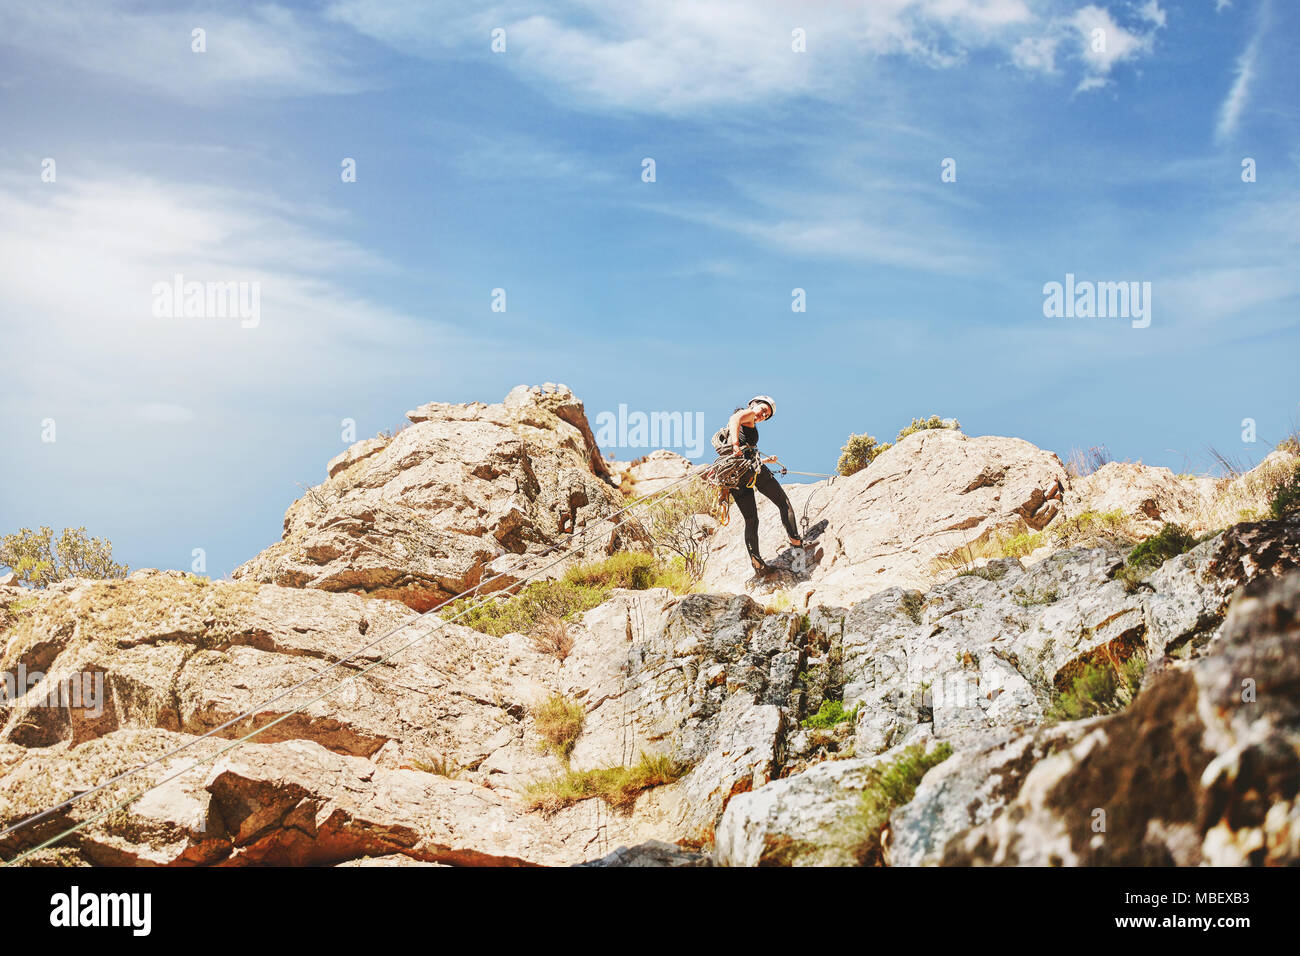 Rock climber climbing rocks Stock Photo